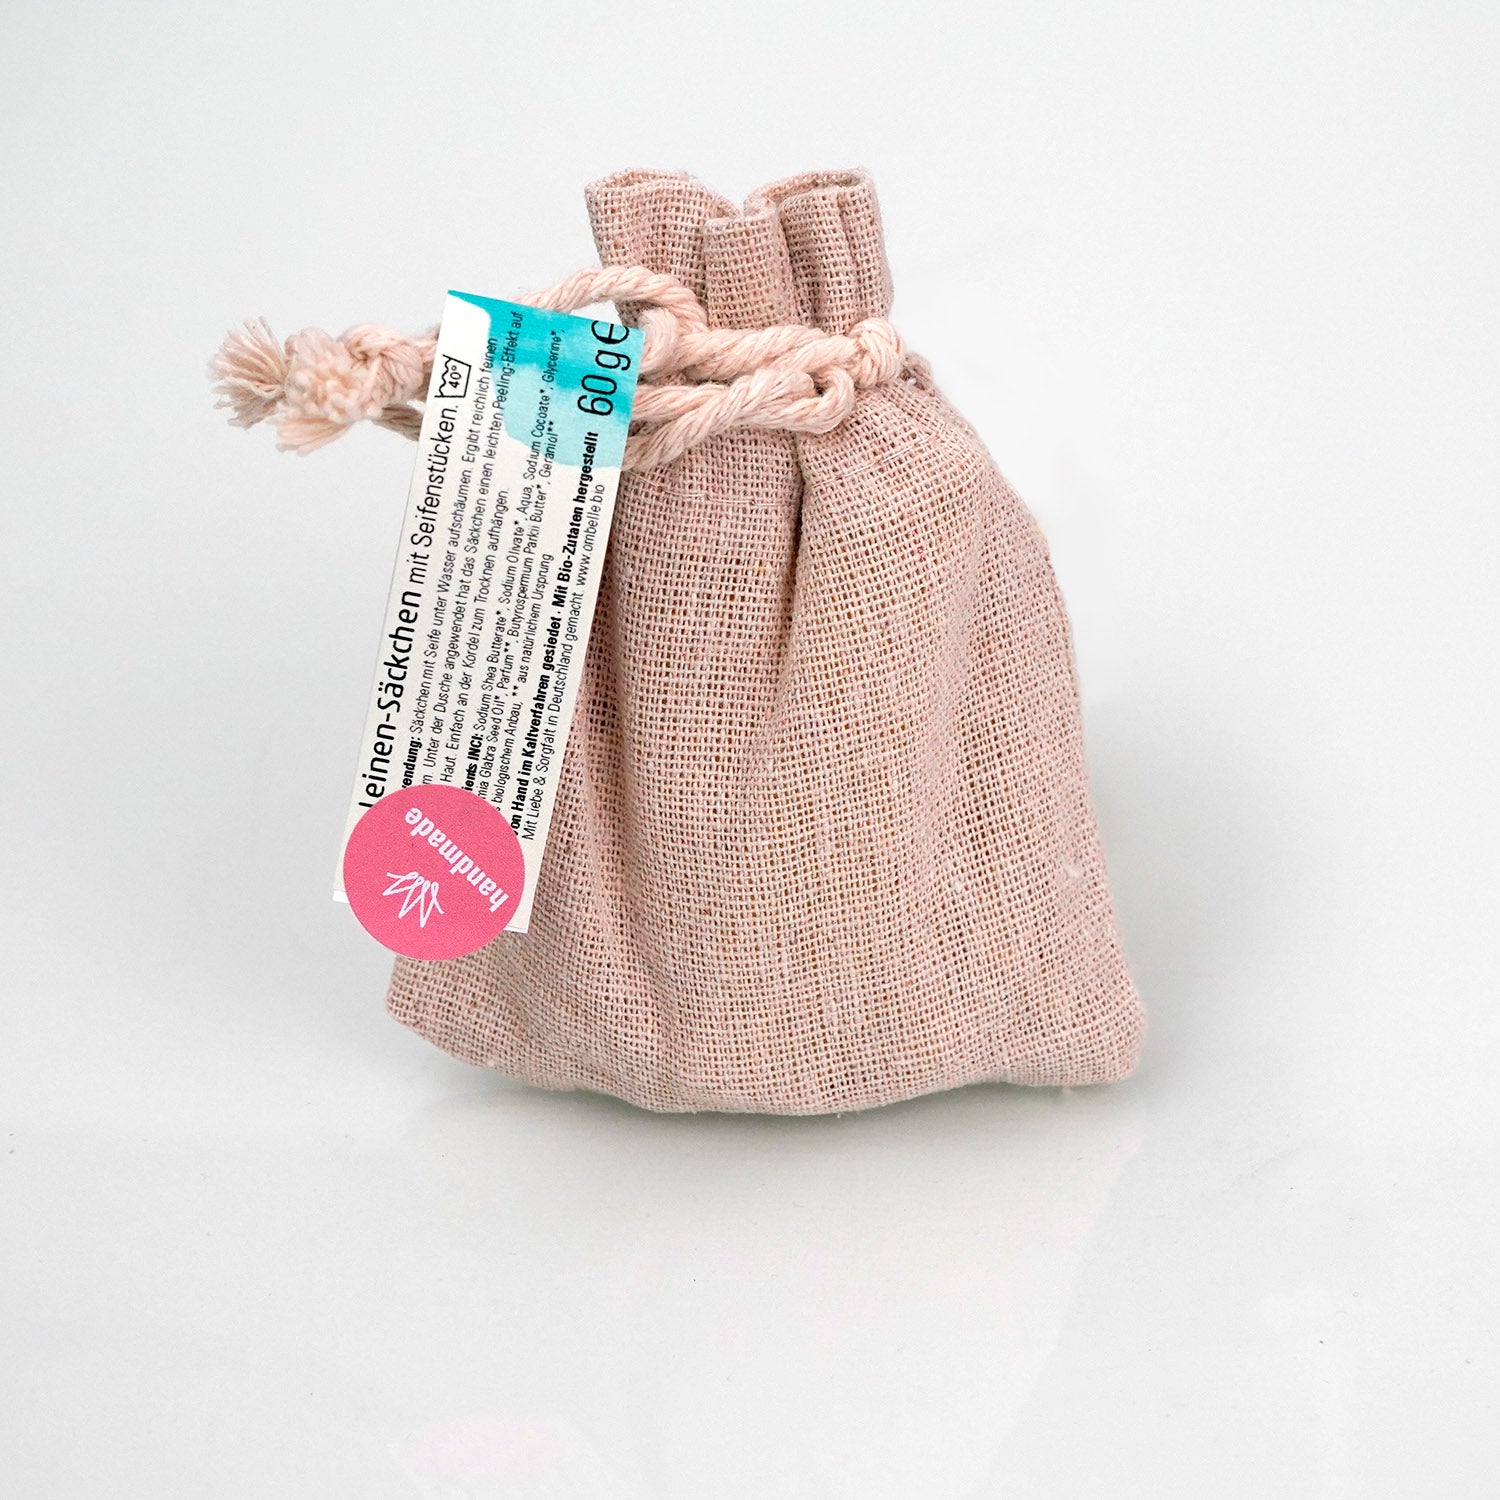 Ombelle Seifensäckchen aus Leinen mit Seifenstücken, von hinten fotografiert.